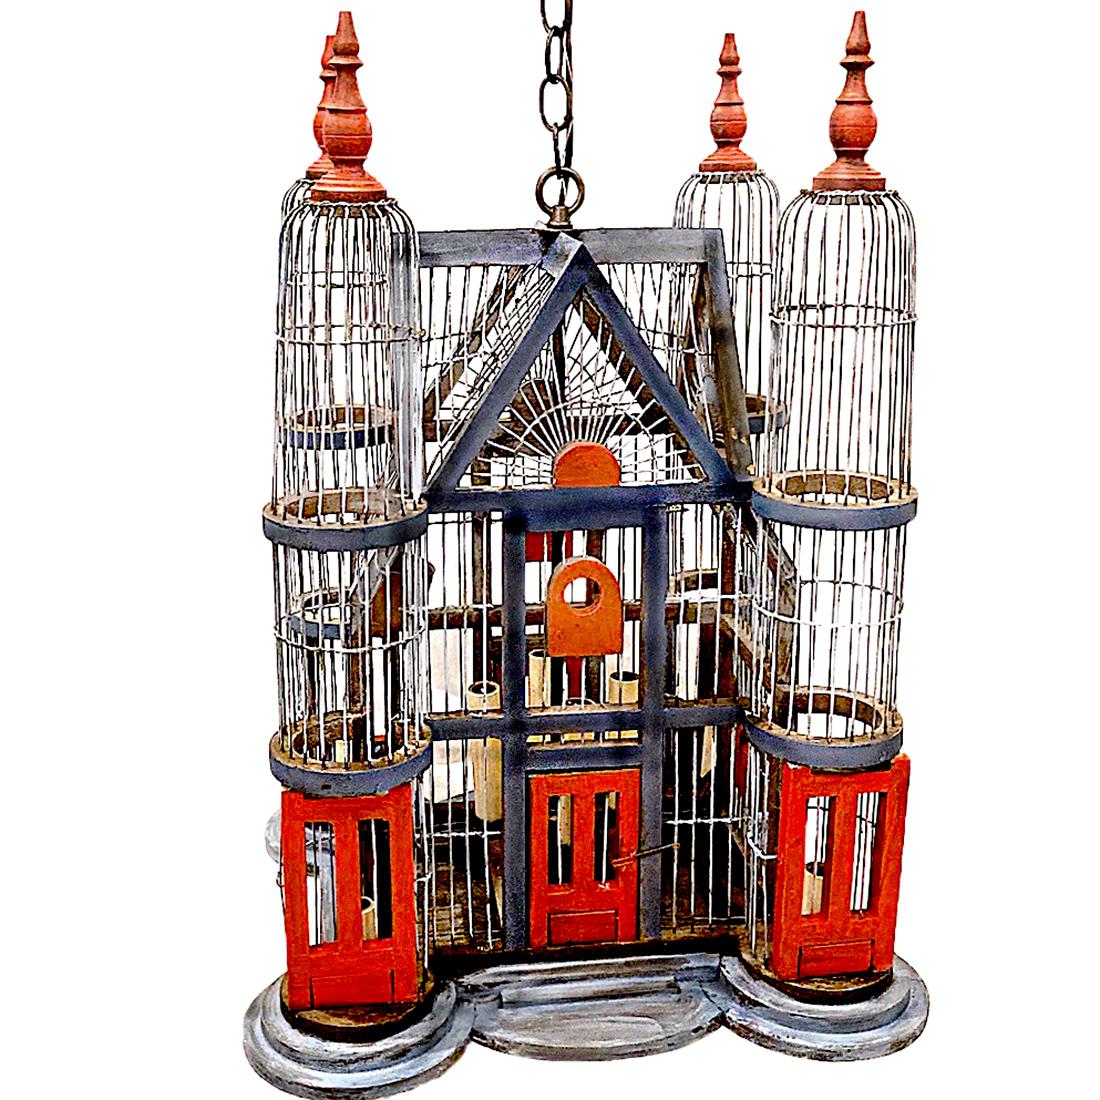 Un lustre français en forme de cage d'oiseau datant des années 1950 avec huit lampes intérieures.

Mesures :
Chute actuelle : 31